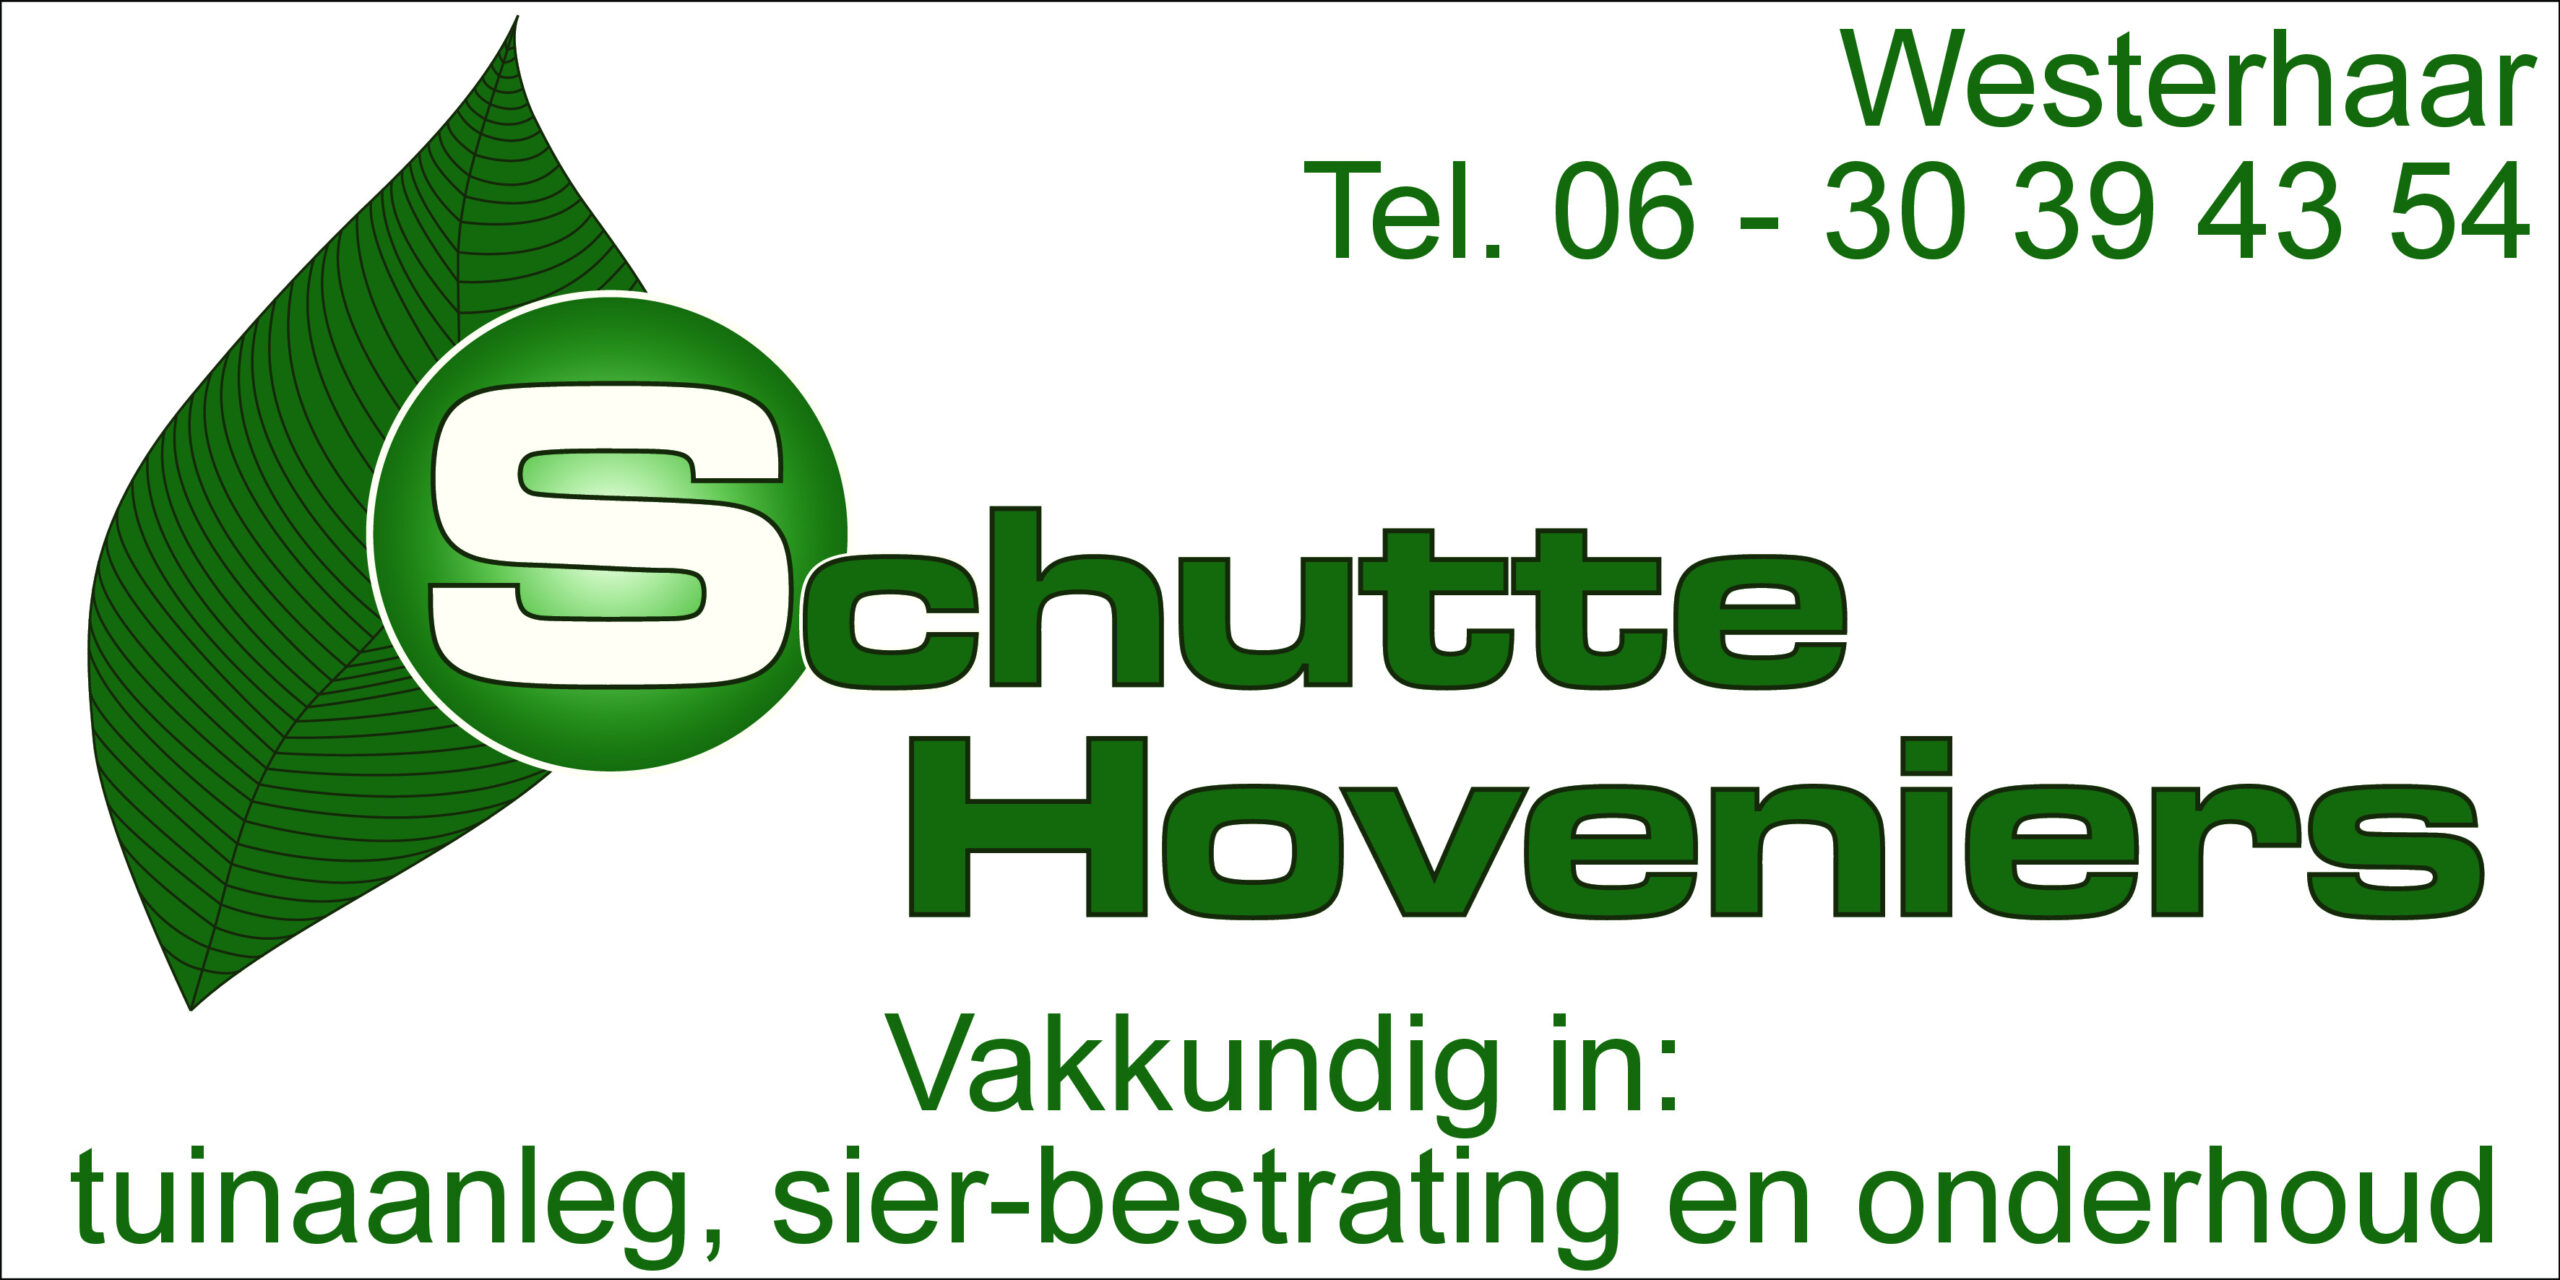 Schutte hoveniers  - Hoveniers bedrijf